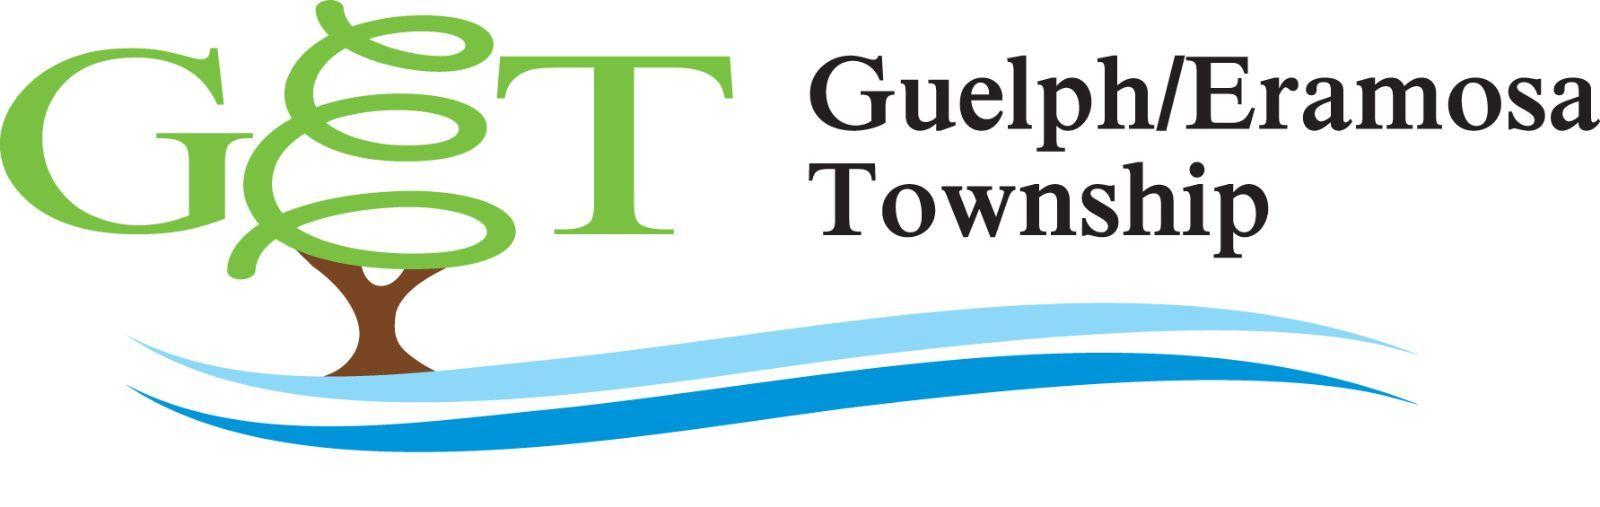 Township Logo - Township of Guelph/Eramosa | Township Logo